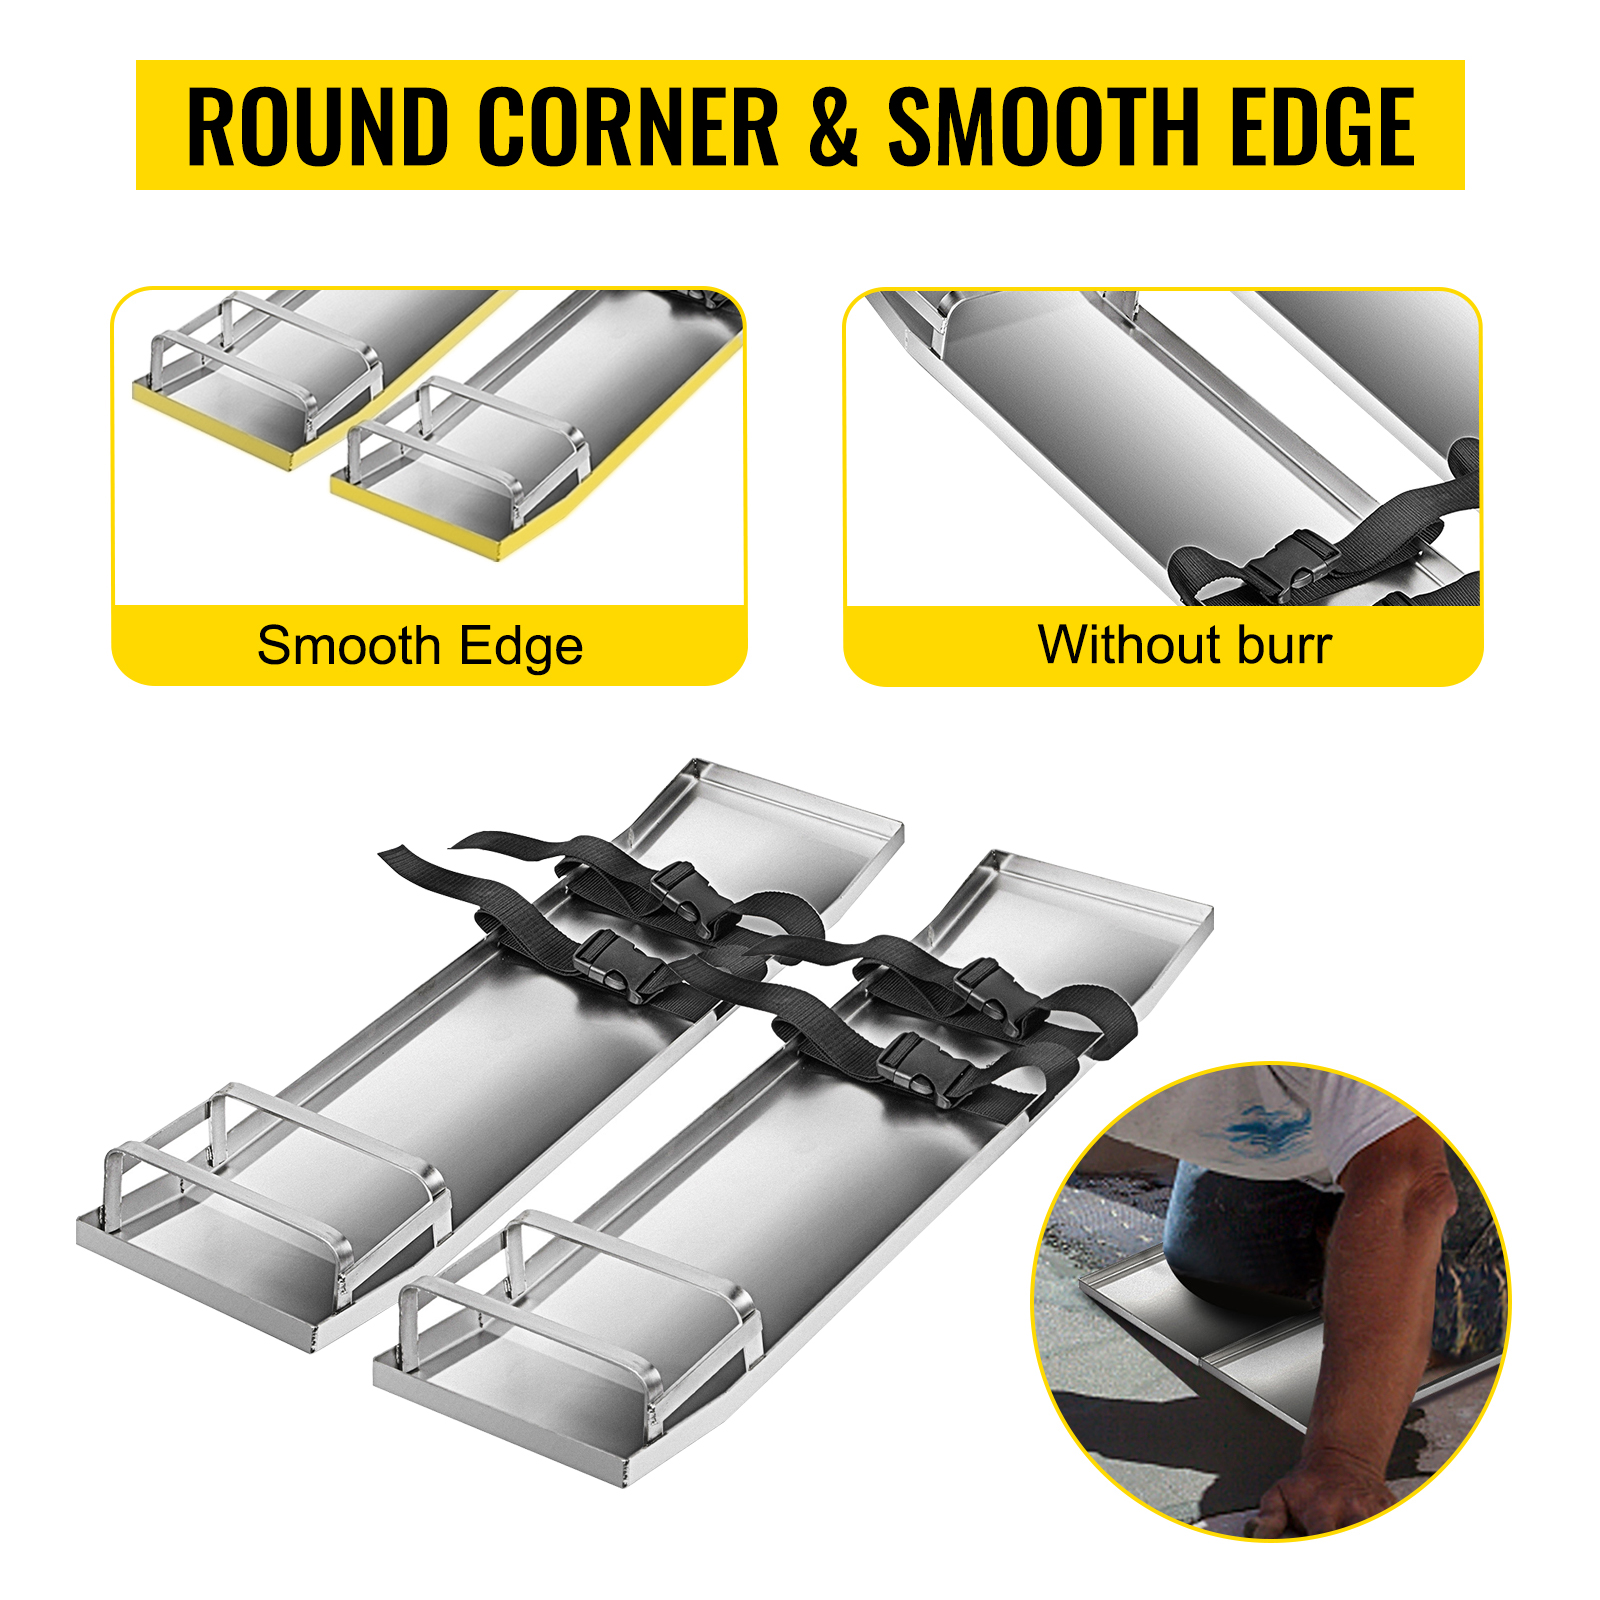 VEVOR Concrete Knee Boards 28'' x 8'' Slider Knee Boards, Kneeler Board  Stainless Steel Concrete Sliders